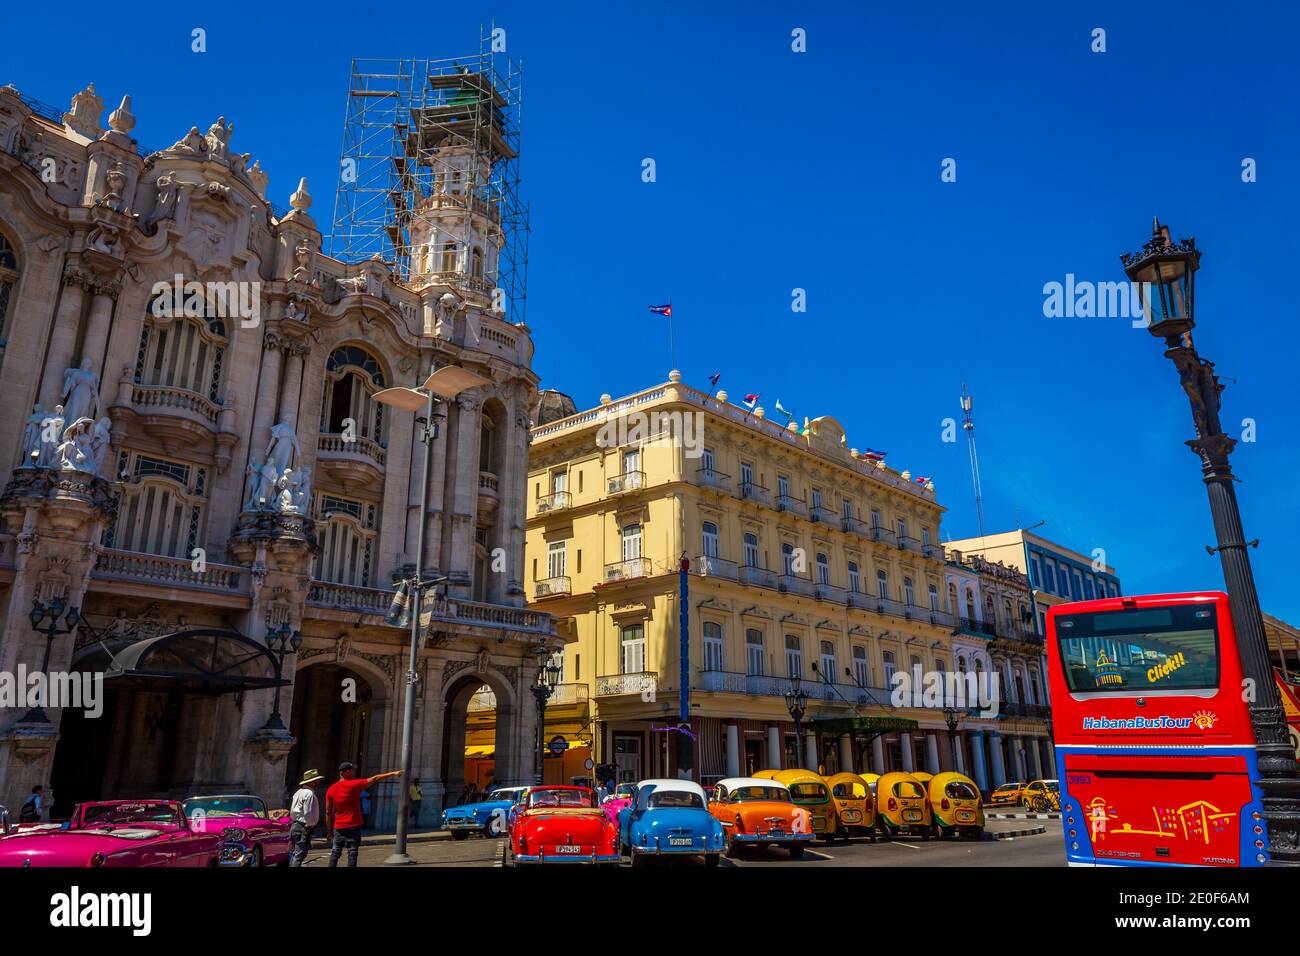 Street view of Gran Teatro de La Habana, and Hotel Inglaterra next door Stock Photo